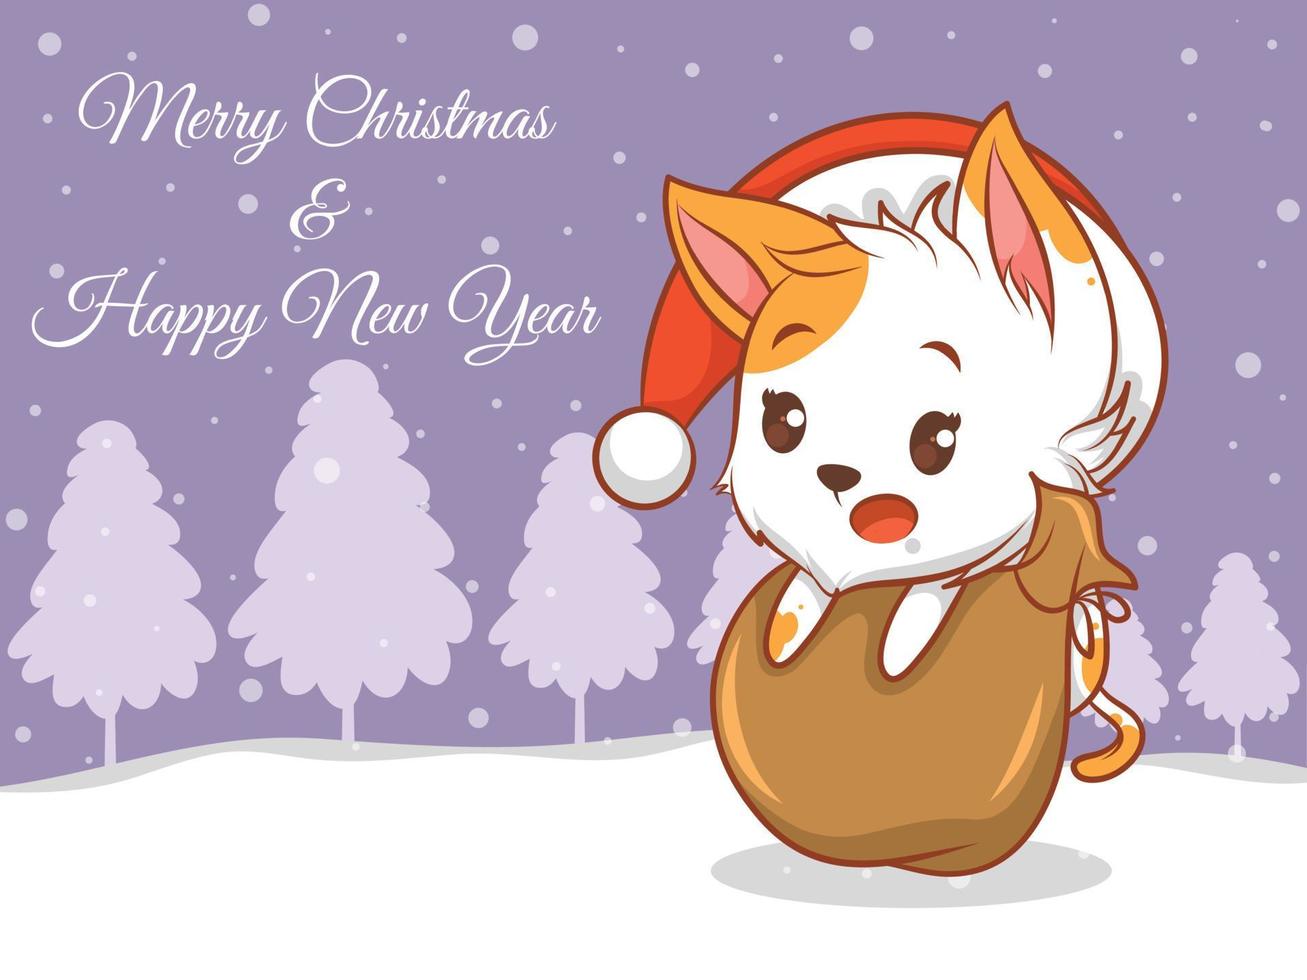 süße katzen-zeichentrickfigur mit frohen weihnachten und guten rutsch ins neue jahr grußbanner. vektor